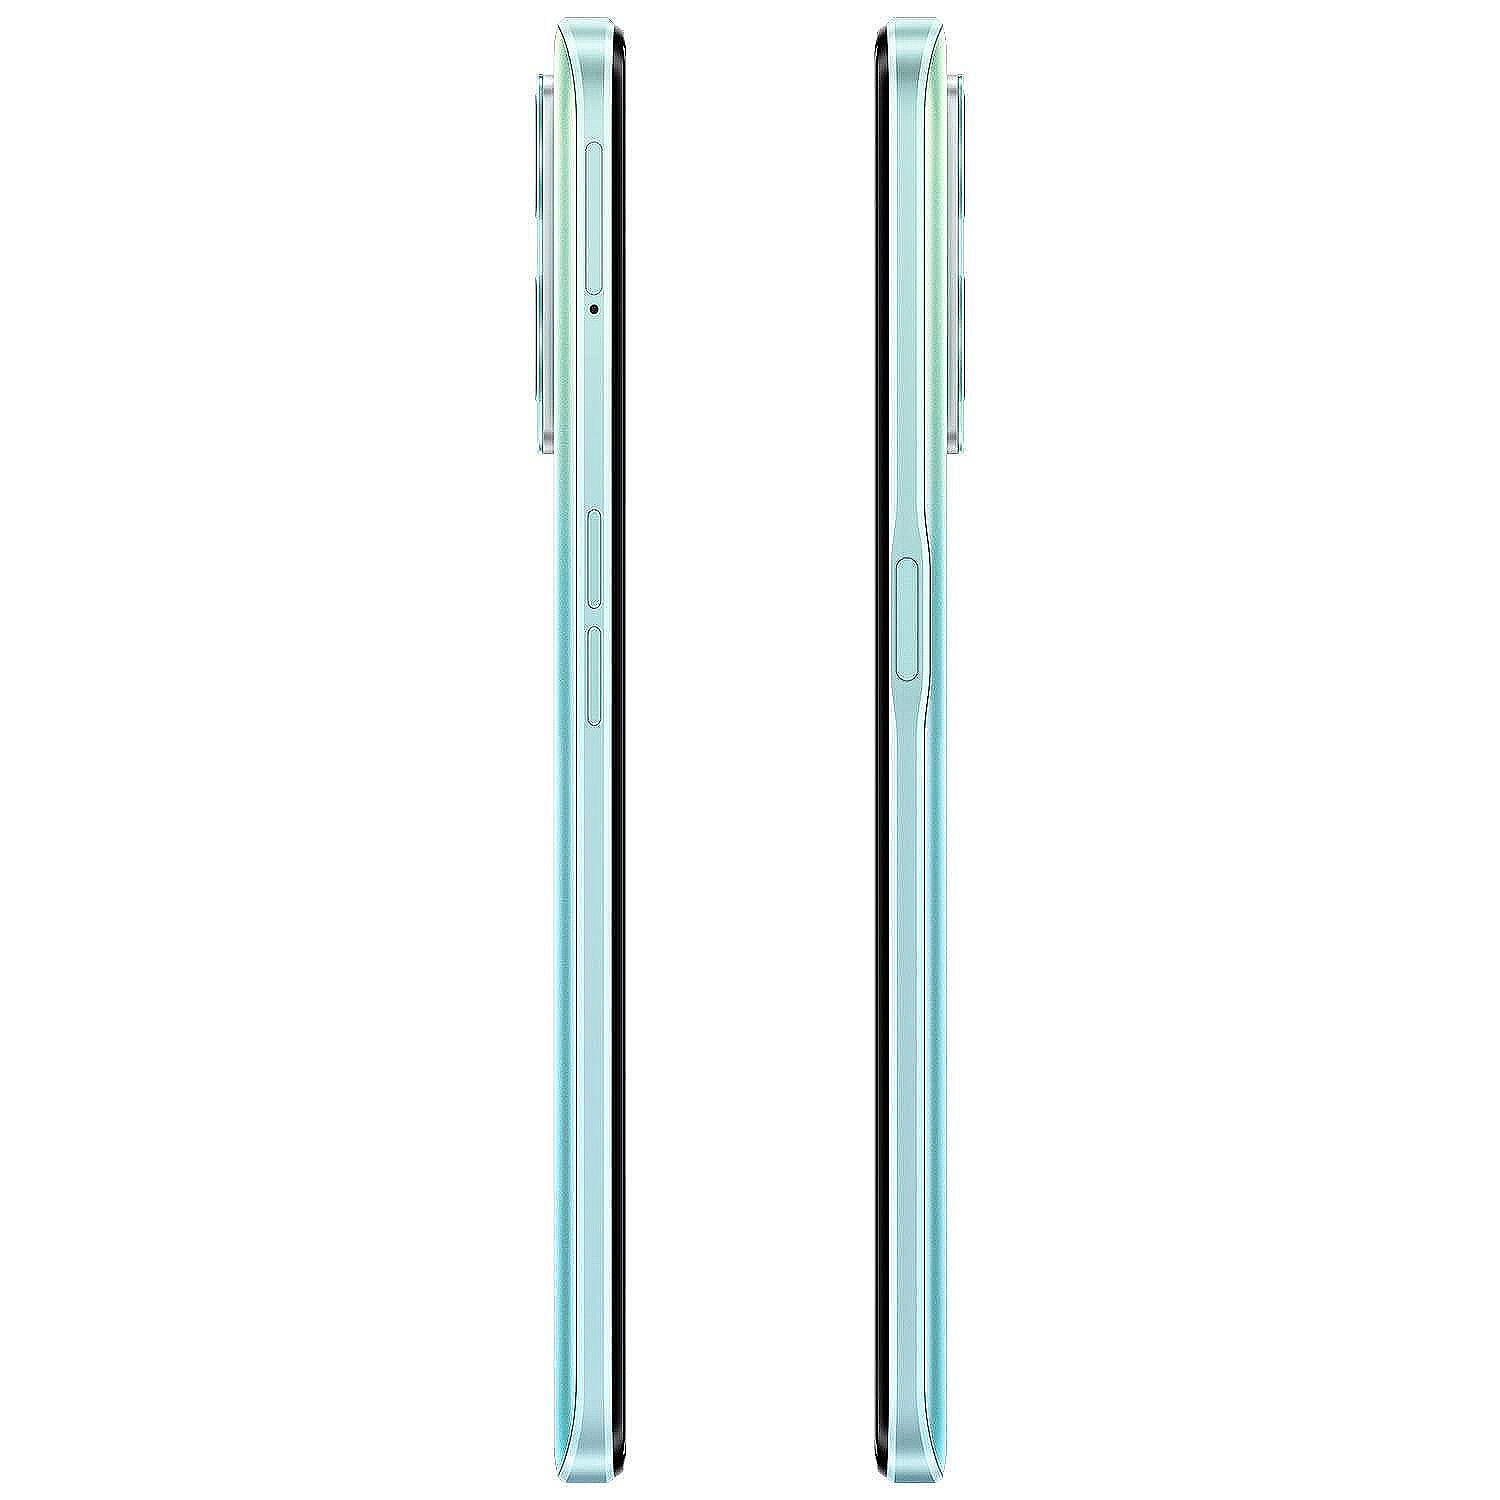 Смартфон OnePlus Nord CE 2 Lite 6 GB 128 GB 5G, Черен